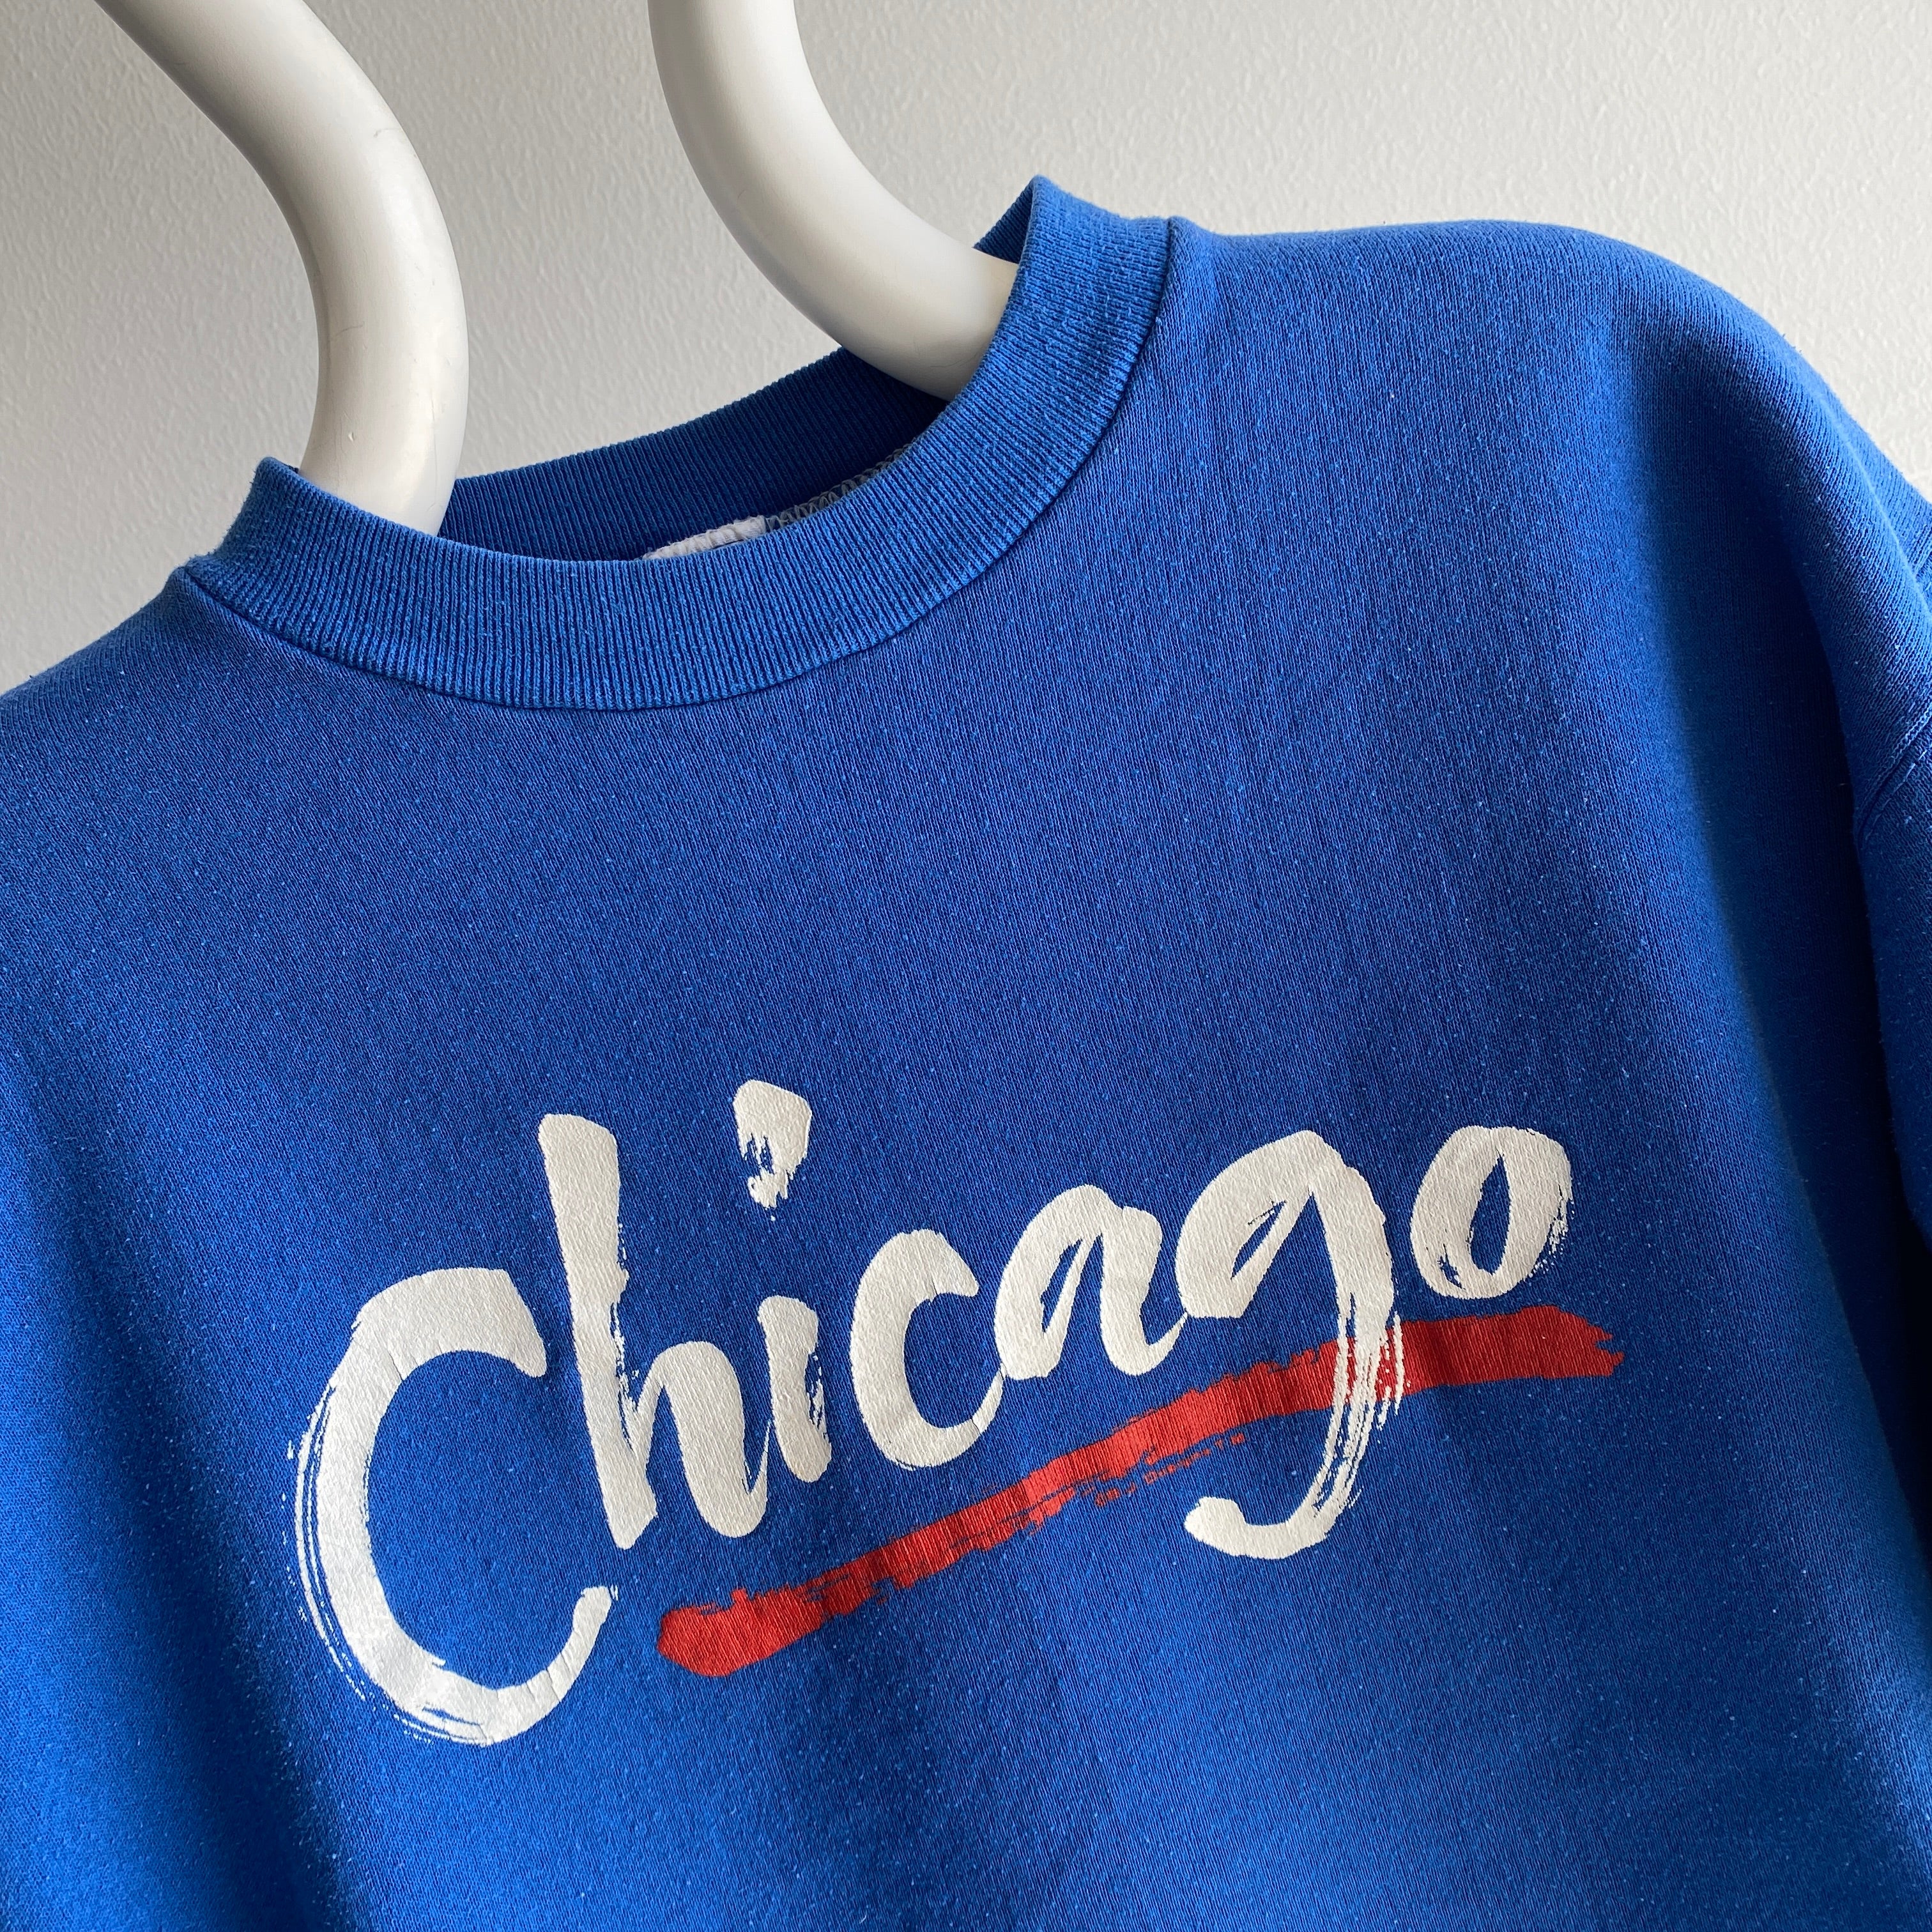 Sweat-shirt touristique Russell Brand Chicago Higher Crew des années 1980 - Oui s'il vous plaît !